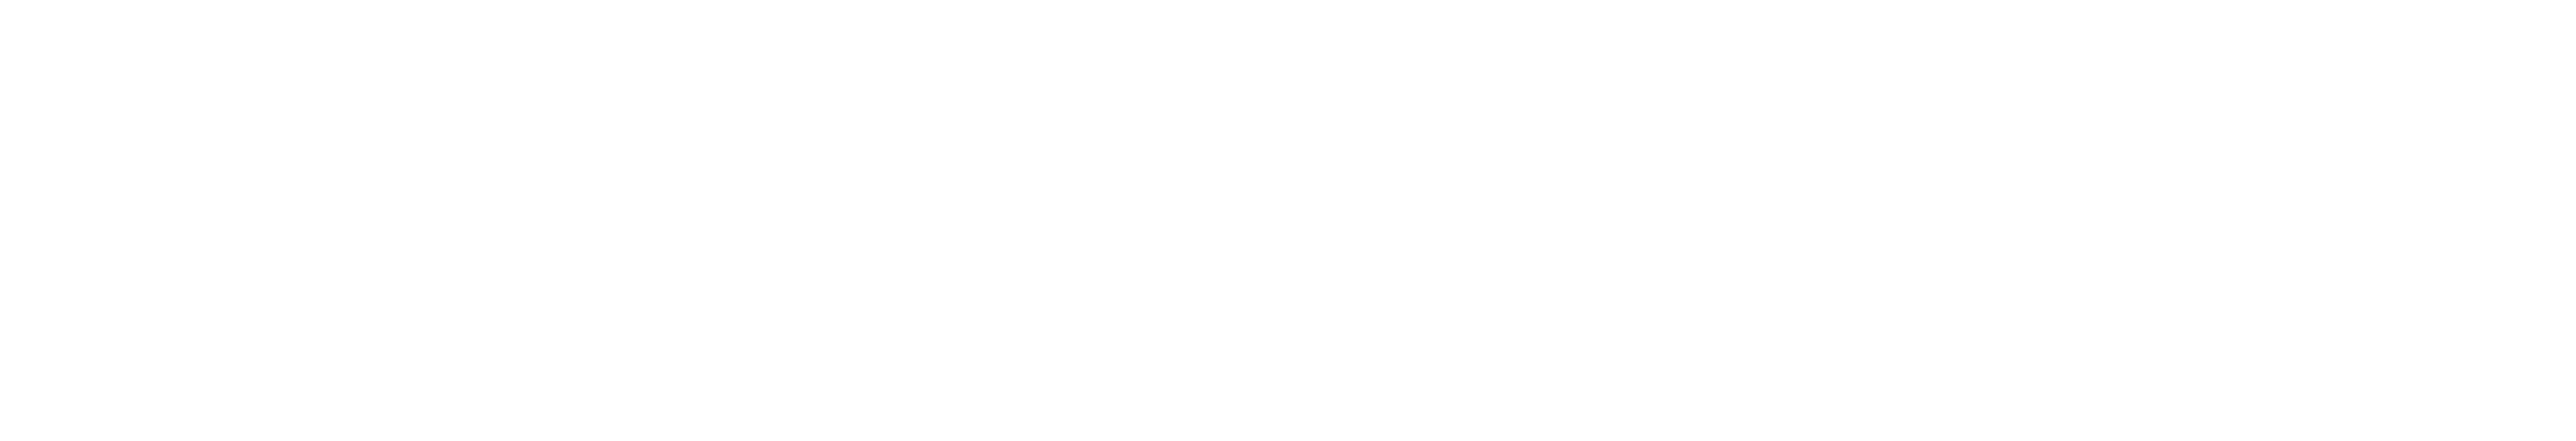 HBO - HBO Family - HBO Premier - Simpletv - Venezuela